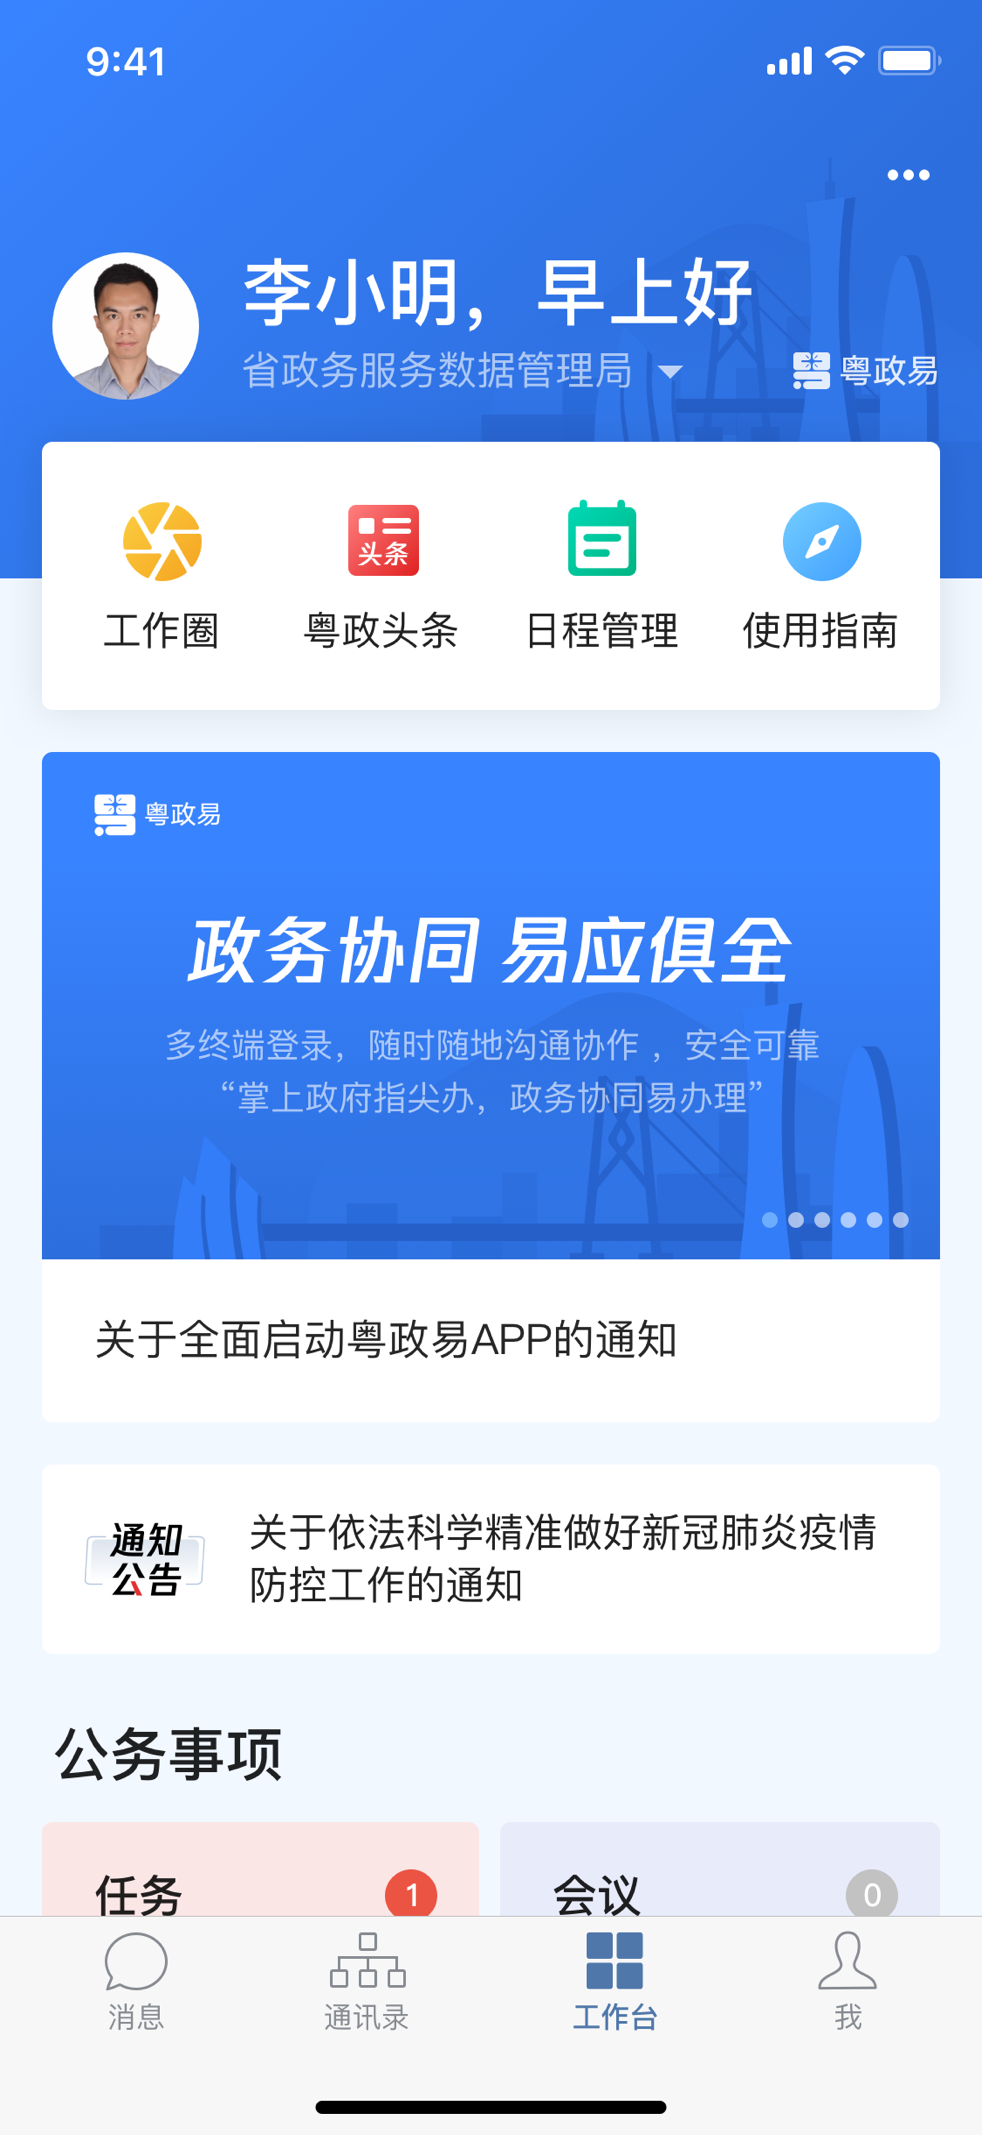 广东：“数据跑路”代替“文来文往” 粤政易用户数破百万